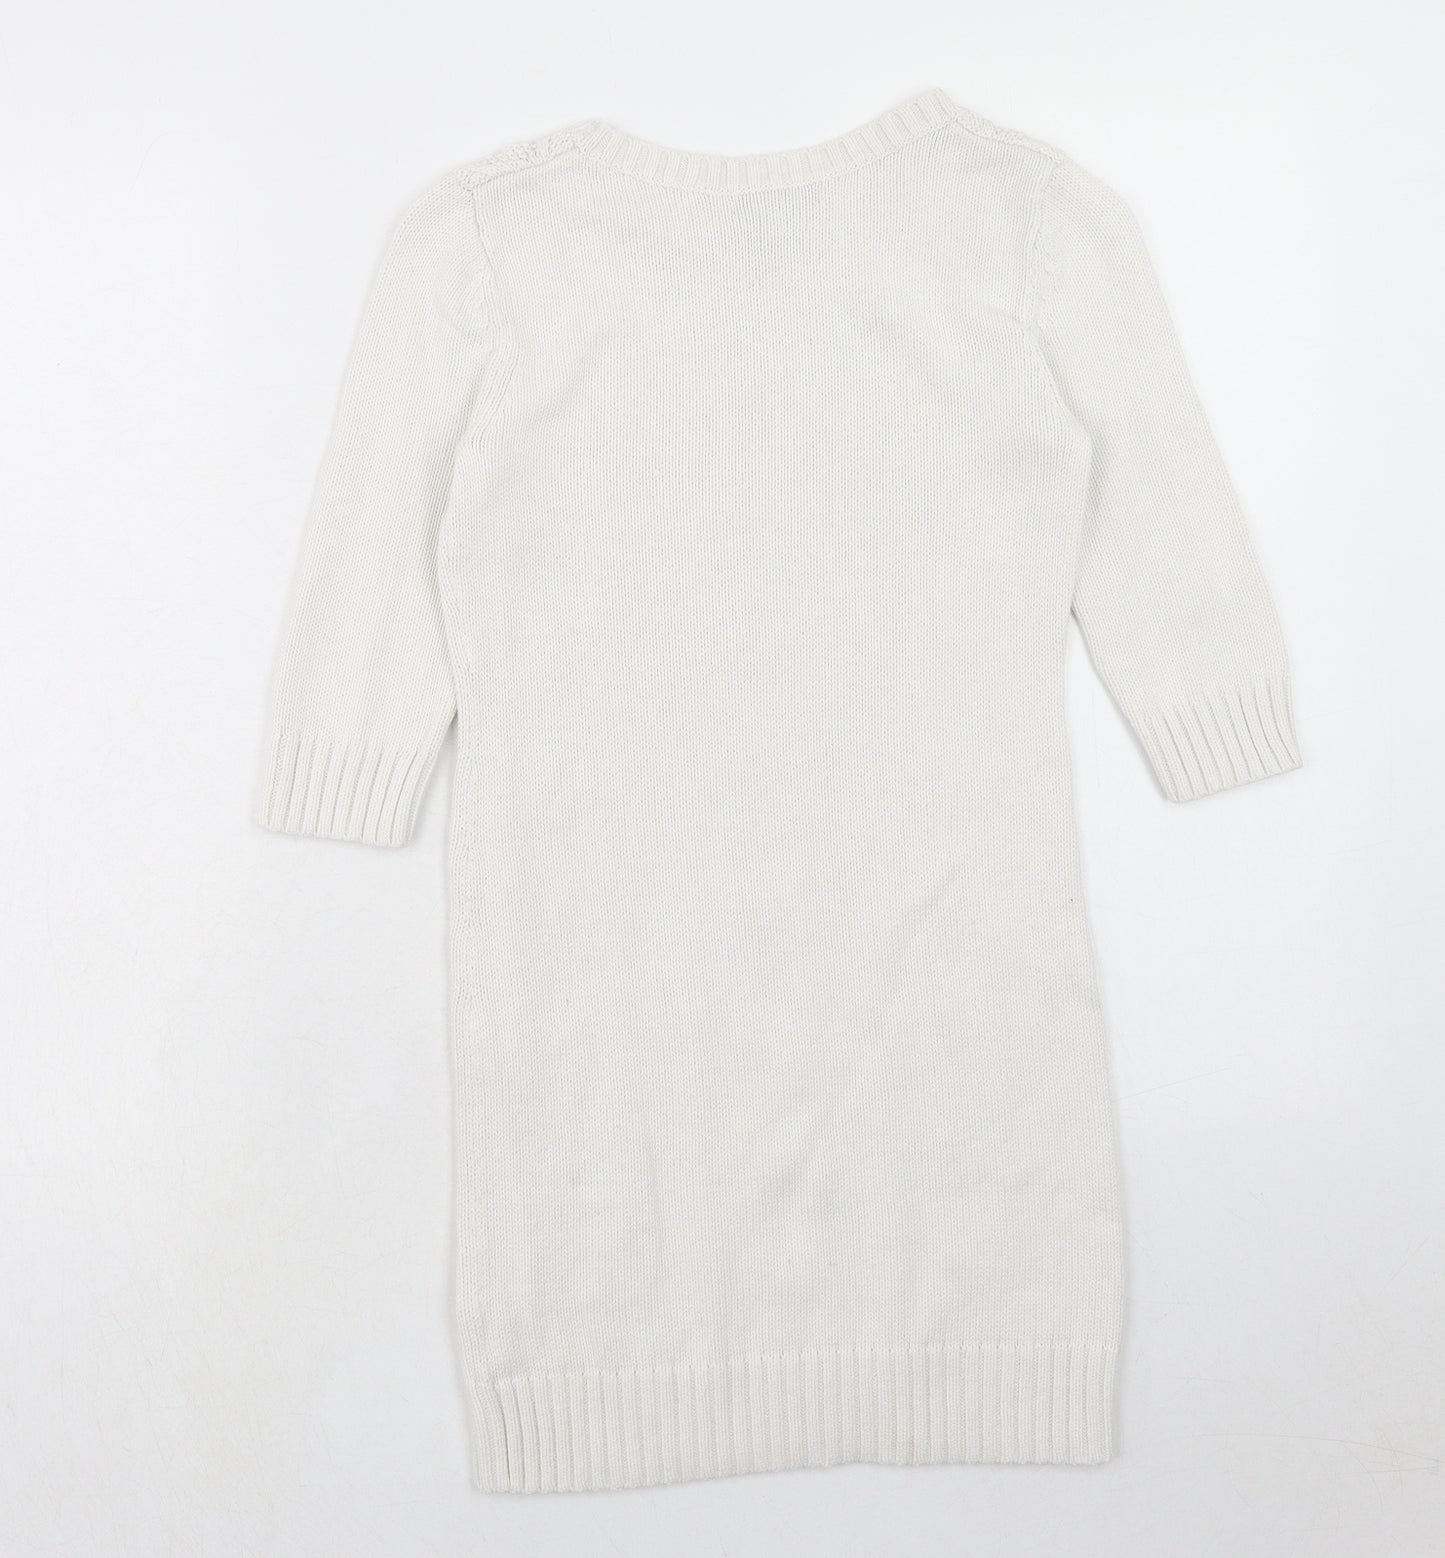 Gap Girls White Cotton Jumper Dress Size 8-9 Years Round Neck Pullover